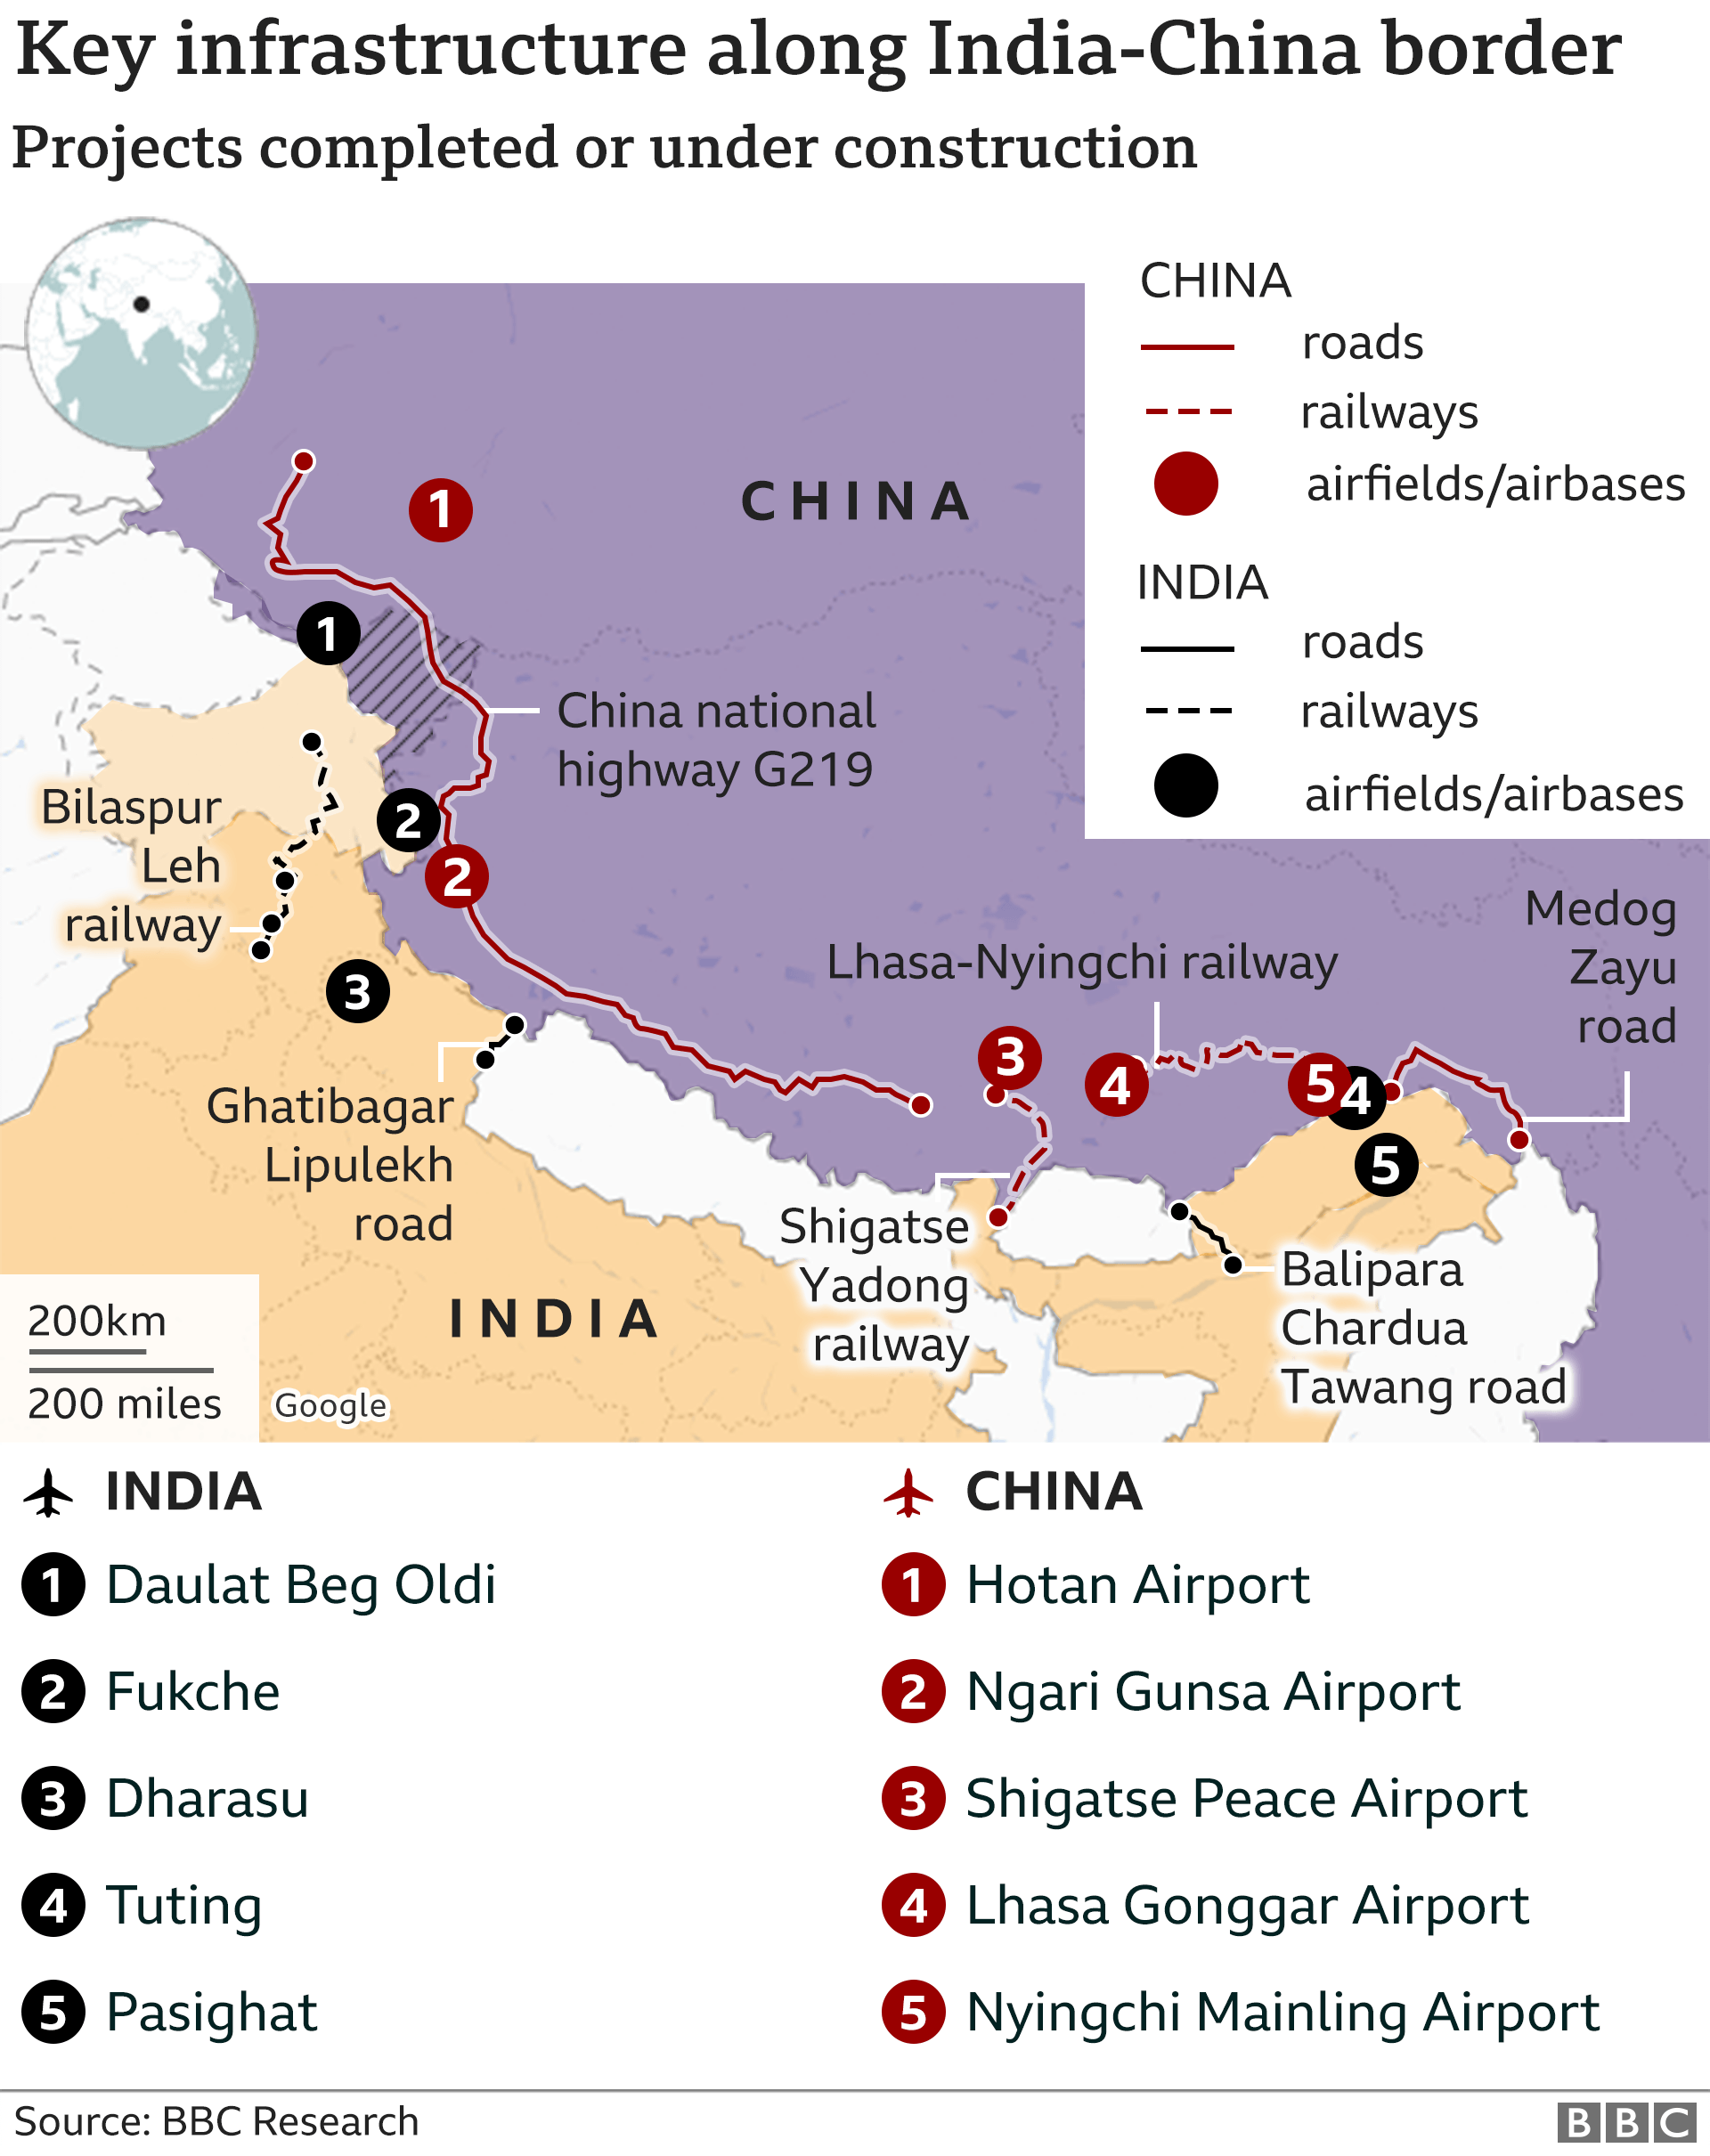 Key infrastructure along India-China border